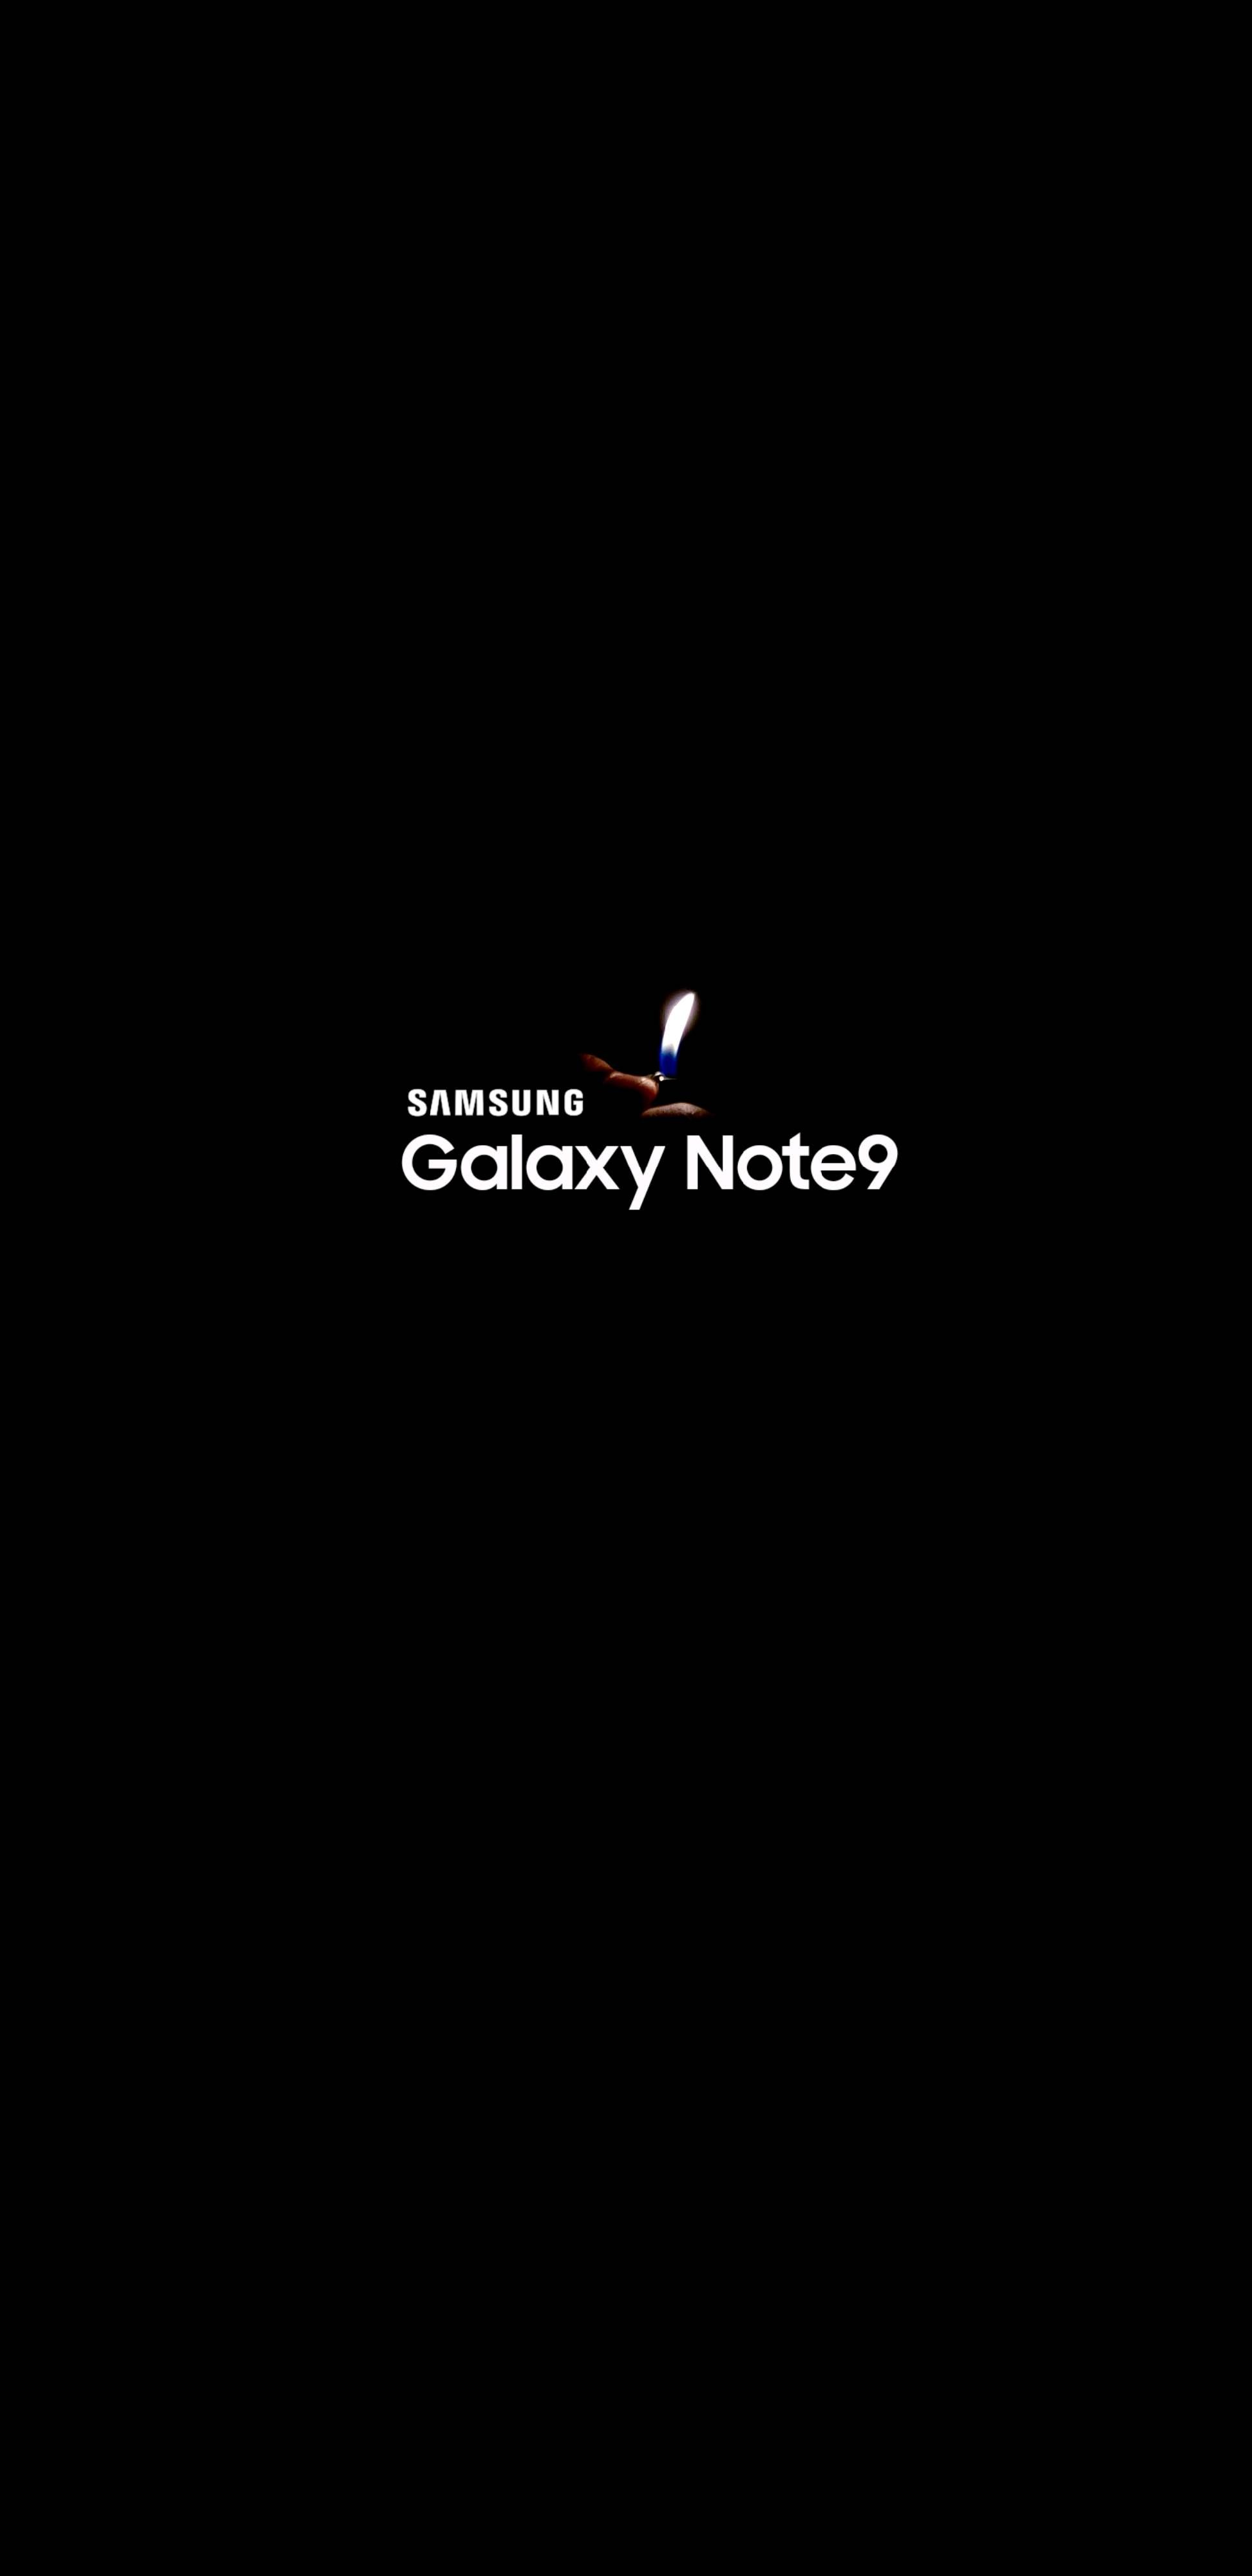 Hình nền Samsung Note 9: Trang trí màn hình Samsung Galaxy Note 9 của bạn với bộ sưu tập các hình nền độc đáo và sáng tạo. Với các hình nền đẹp mắt, bạn sẽ luôn có được trải nghiệm sử dụng điện thoại tuyệt vời nhất. Hãy tải về ngay để thay đổi diện mạo của điện thoại của bạn!